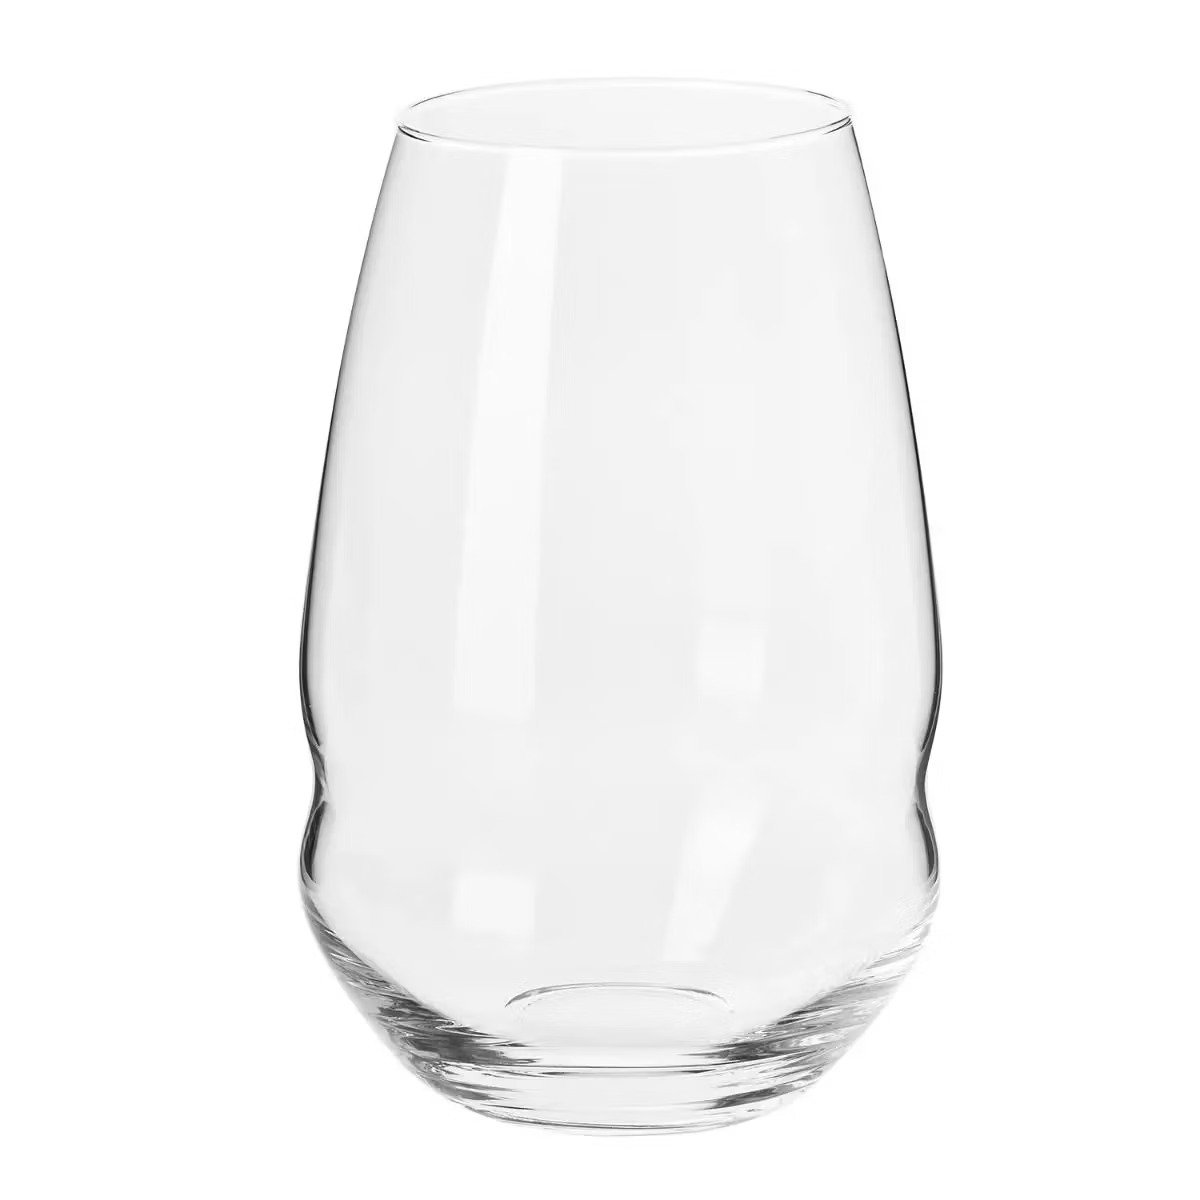 Набор высоких стаканов Krosno Inel стекло 500 мл 6 шт. (913285) - фото 1